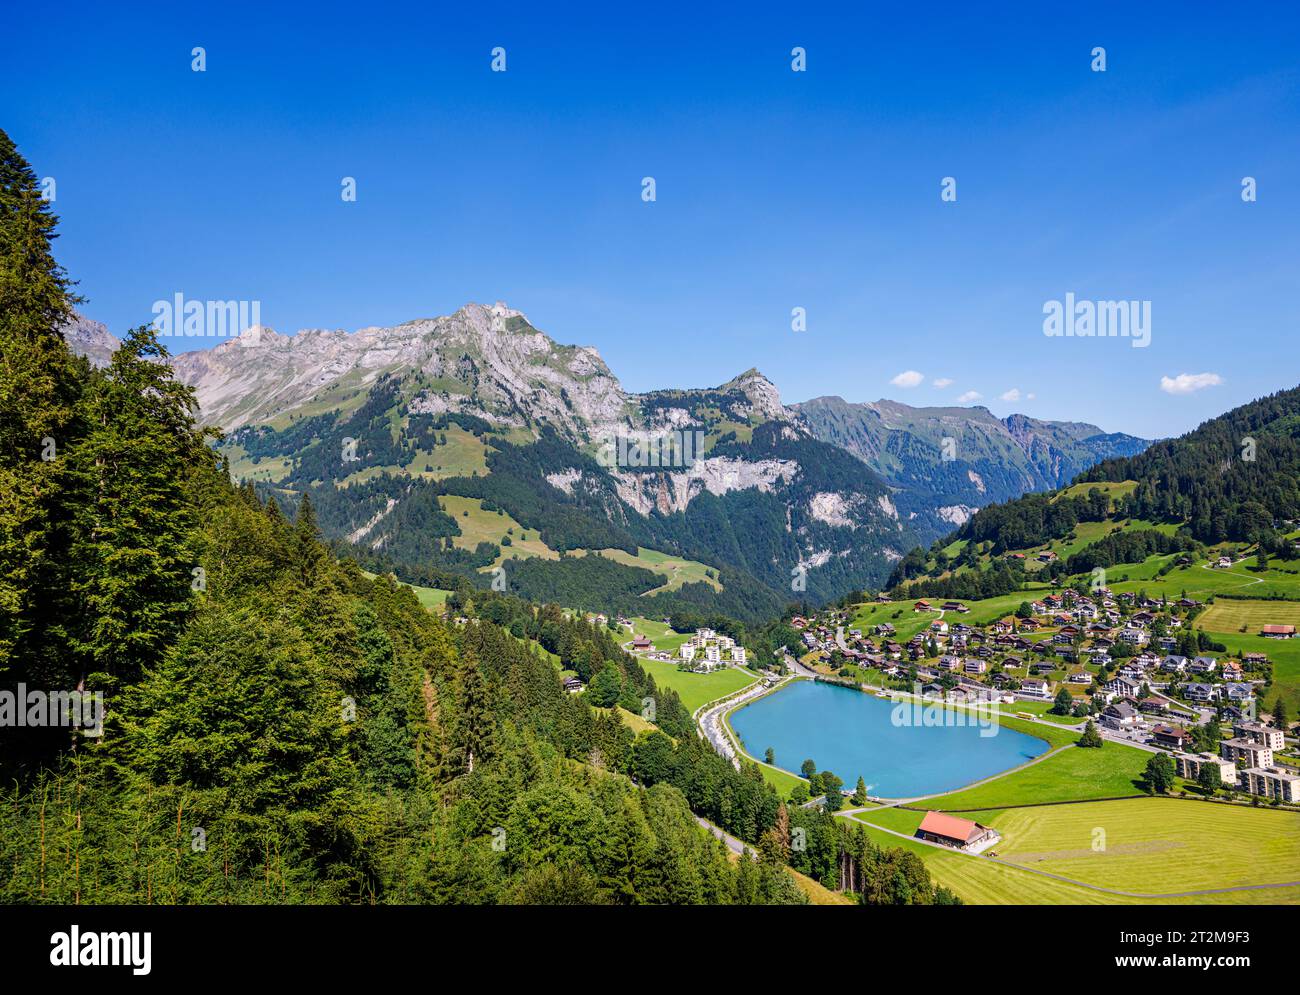 Vista del lago Eugenisee nella località di Engelberg, Svizzera centrale, vista dalla cabinovia Titlis Xpress fino al monte Titlis sopra il villaggio Foto Stock